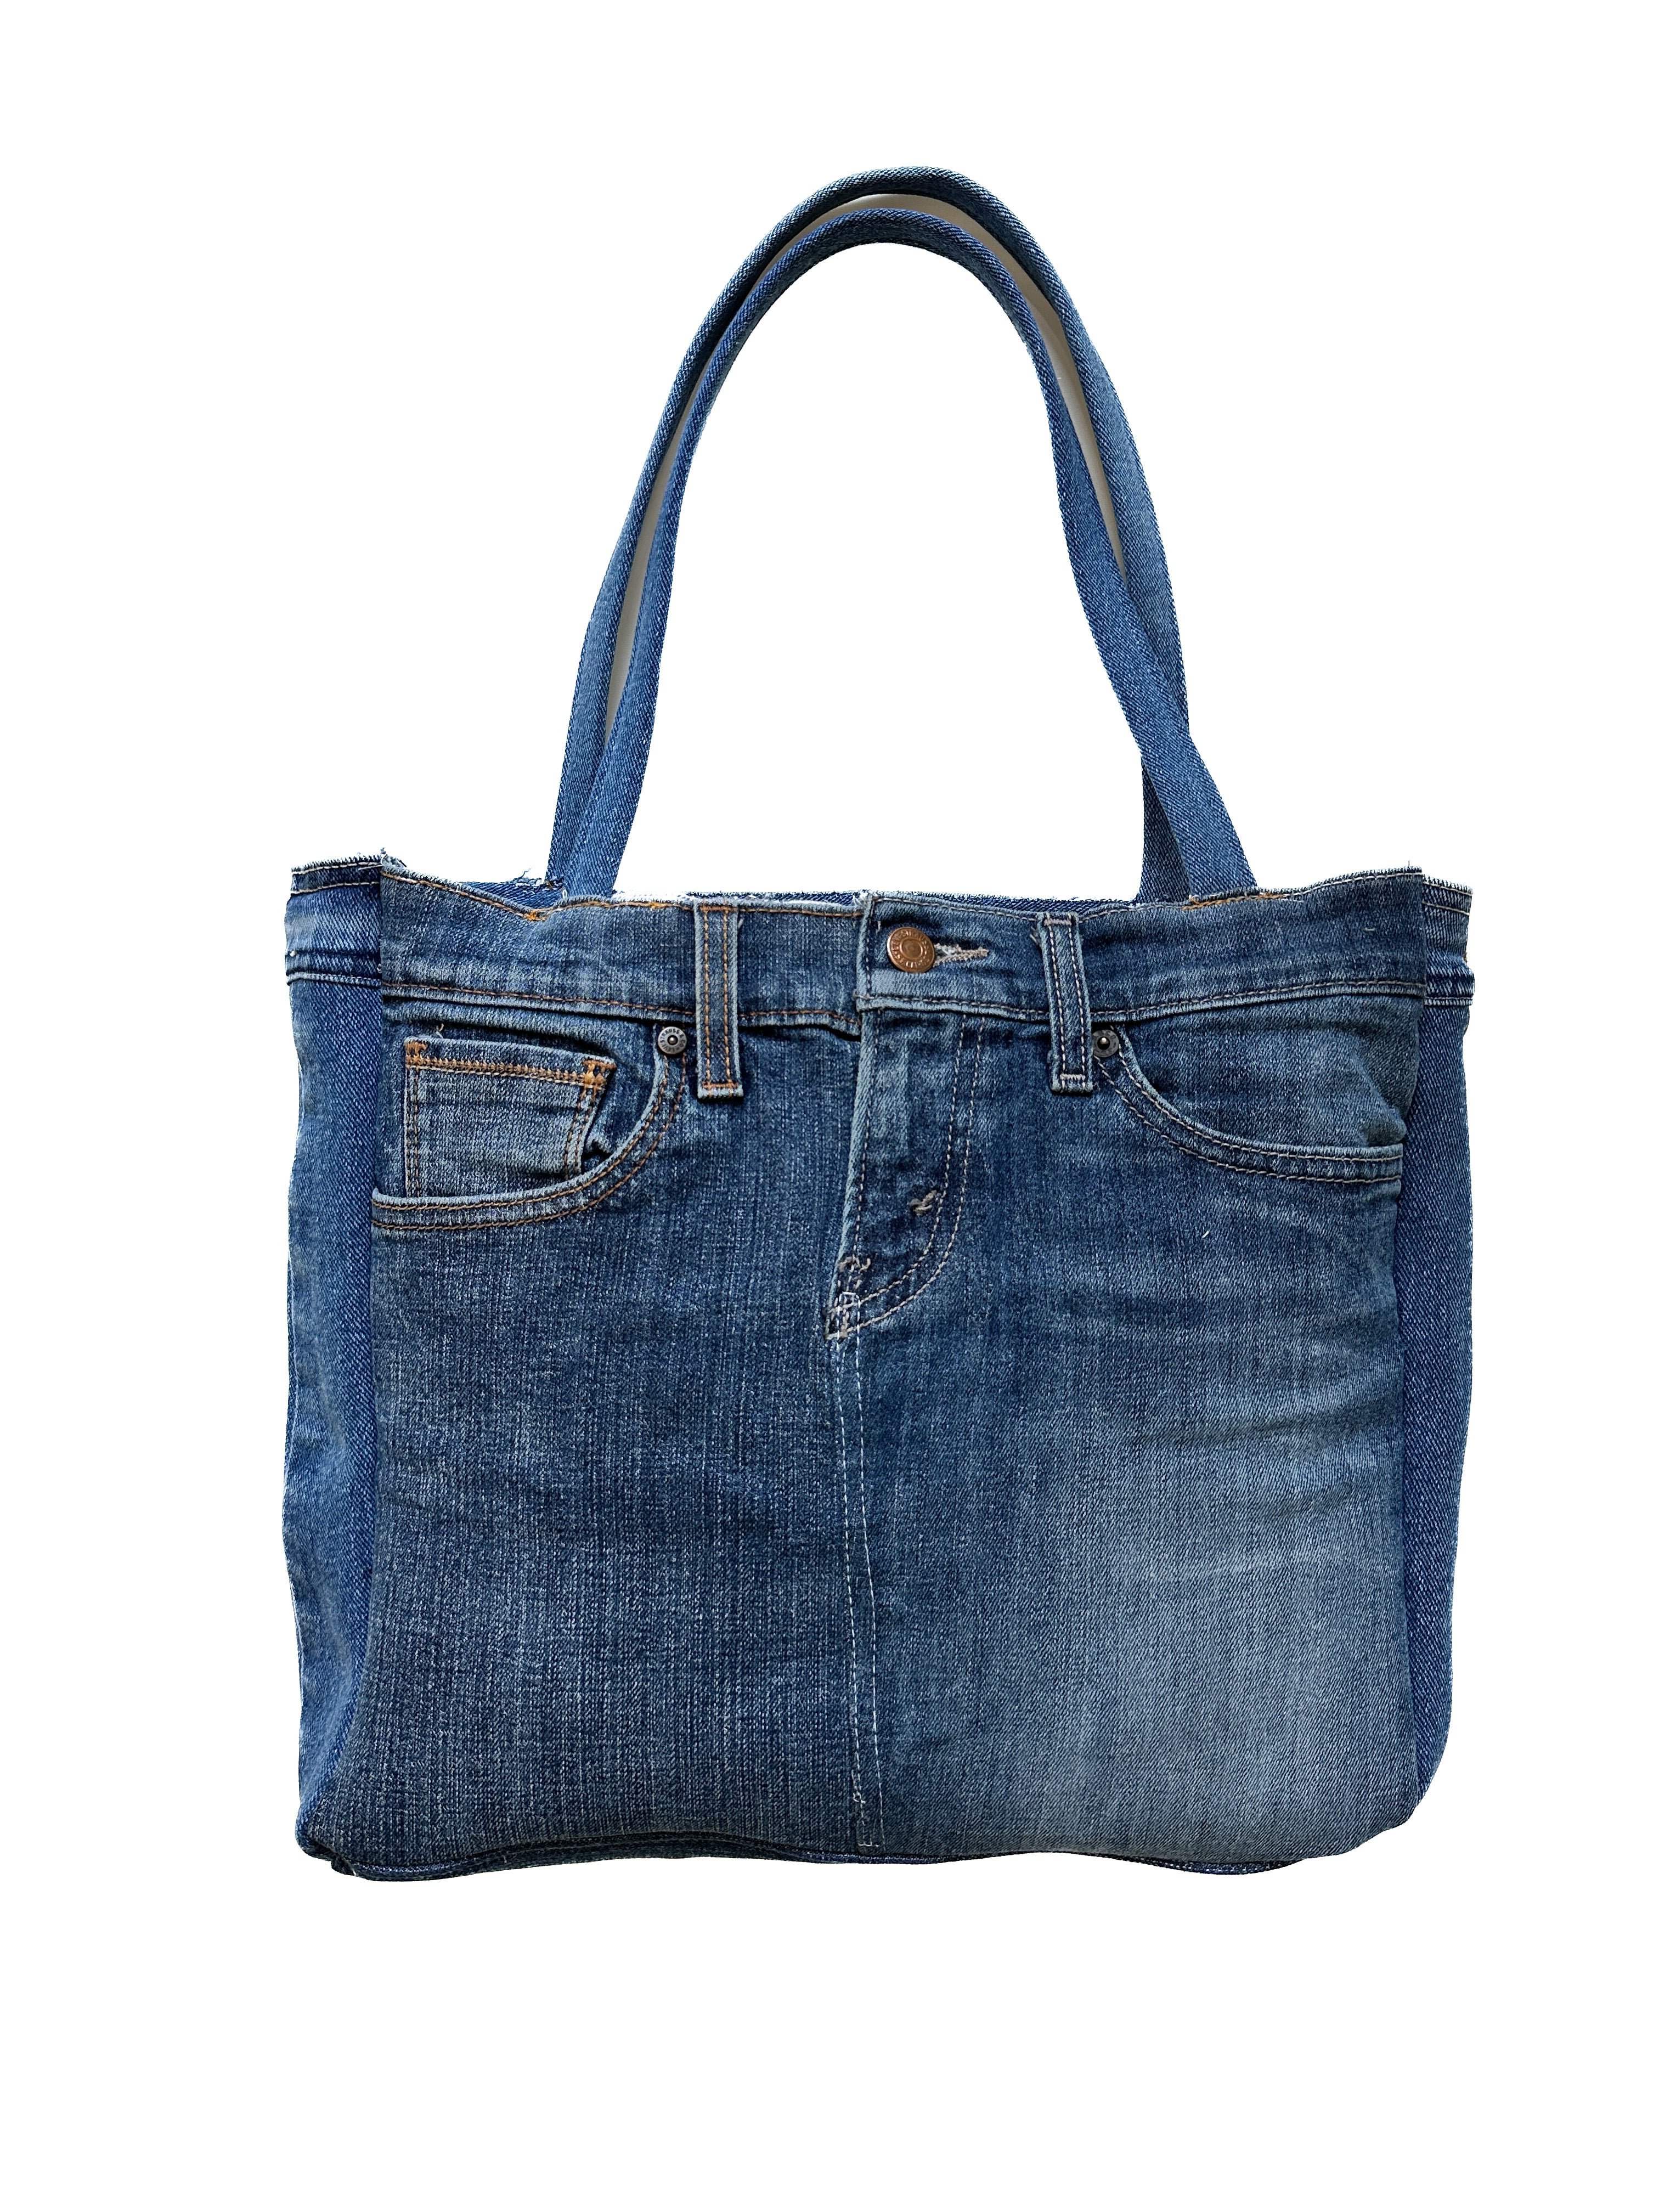 Denim Bag, Recycled Denim, Big Bag, Casual Bag, Sport Bag, UNISEX BAG, Upcycled  Denim Bag, Upcycled Jean Bag, Gammastudio, Code: Den-03 - Etsy